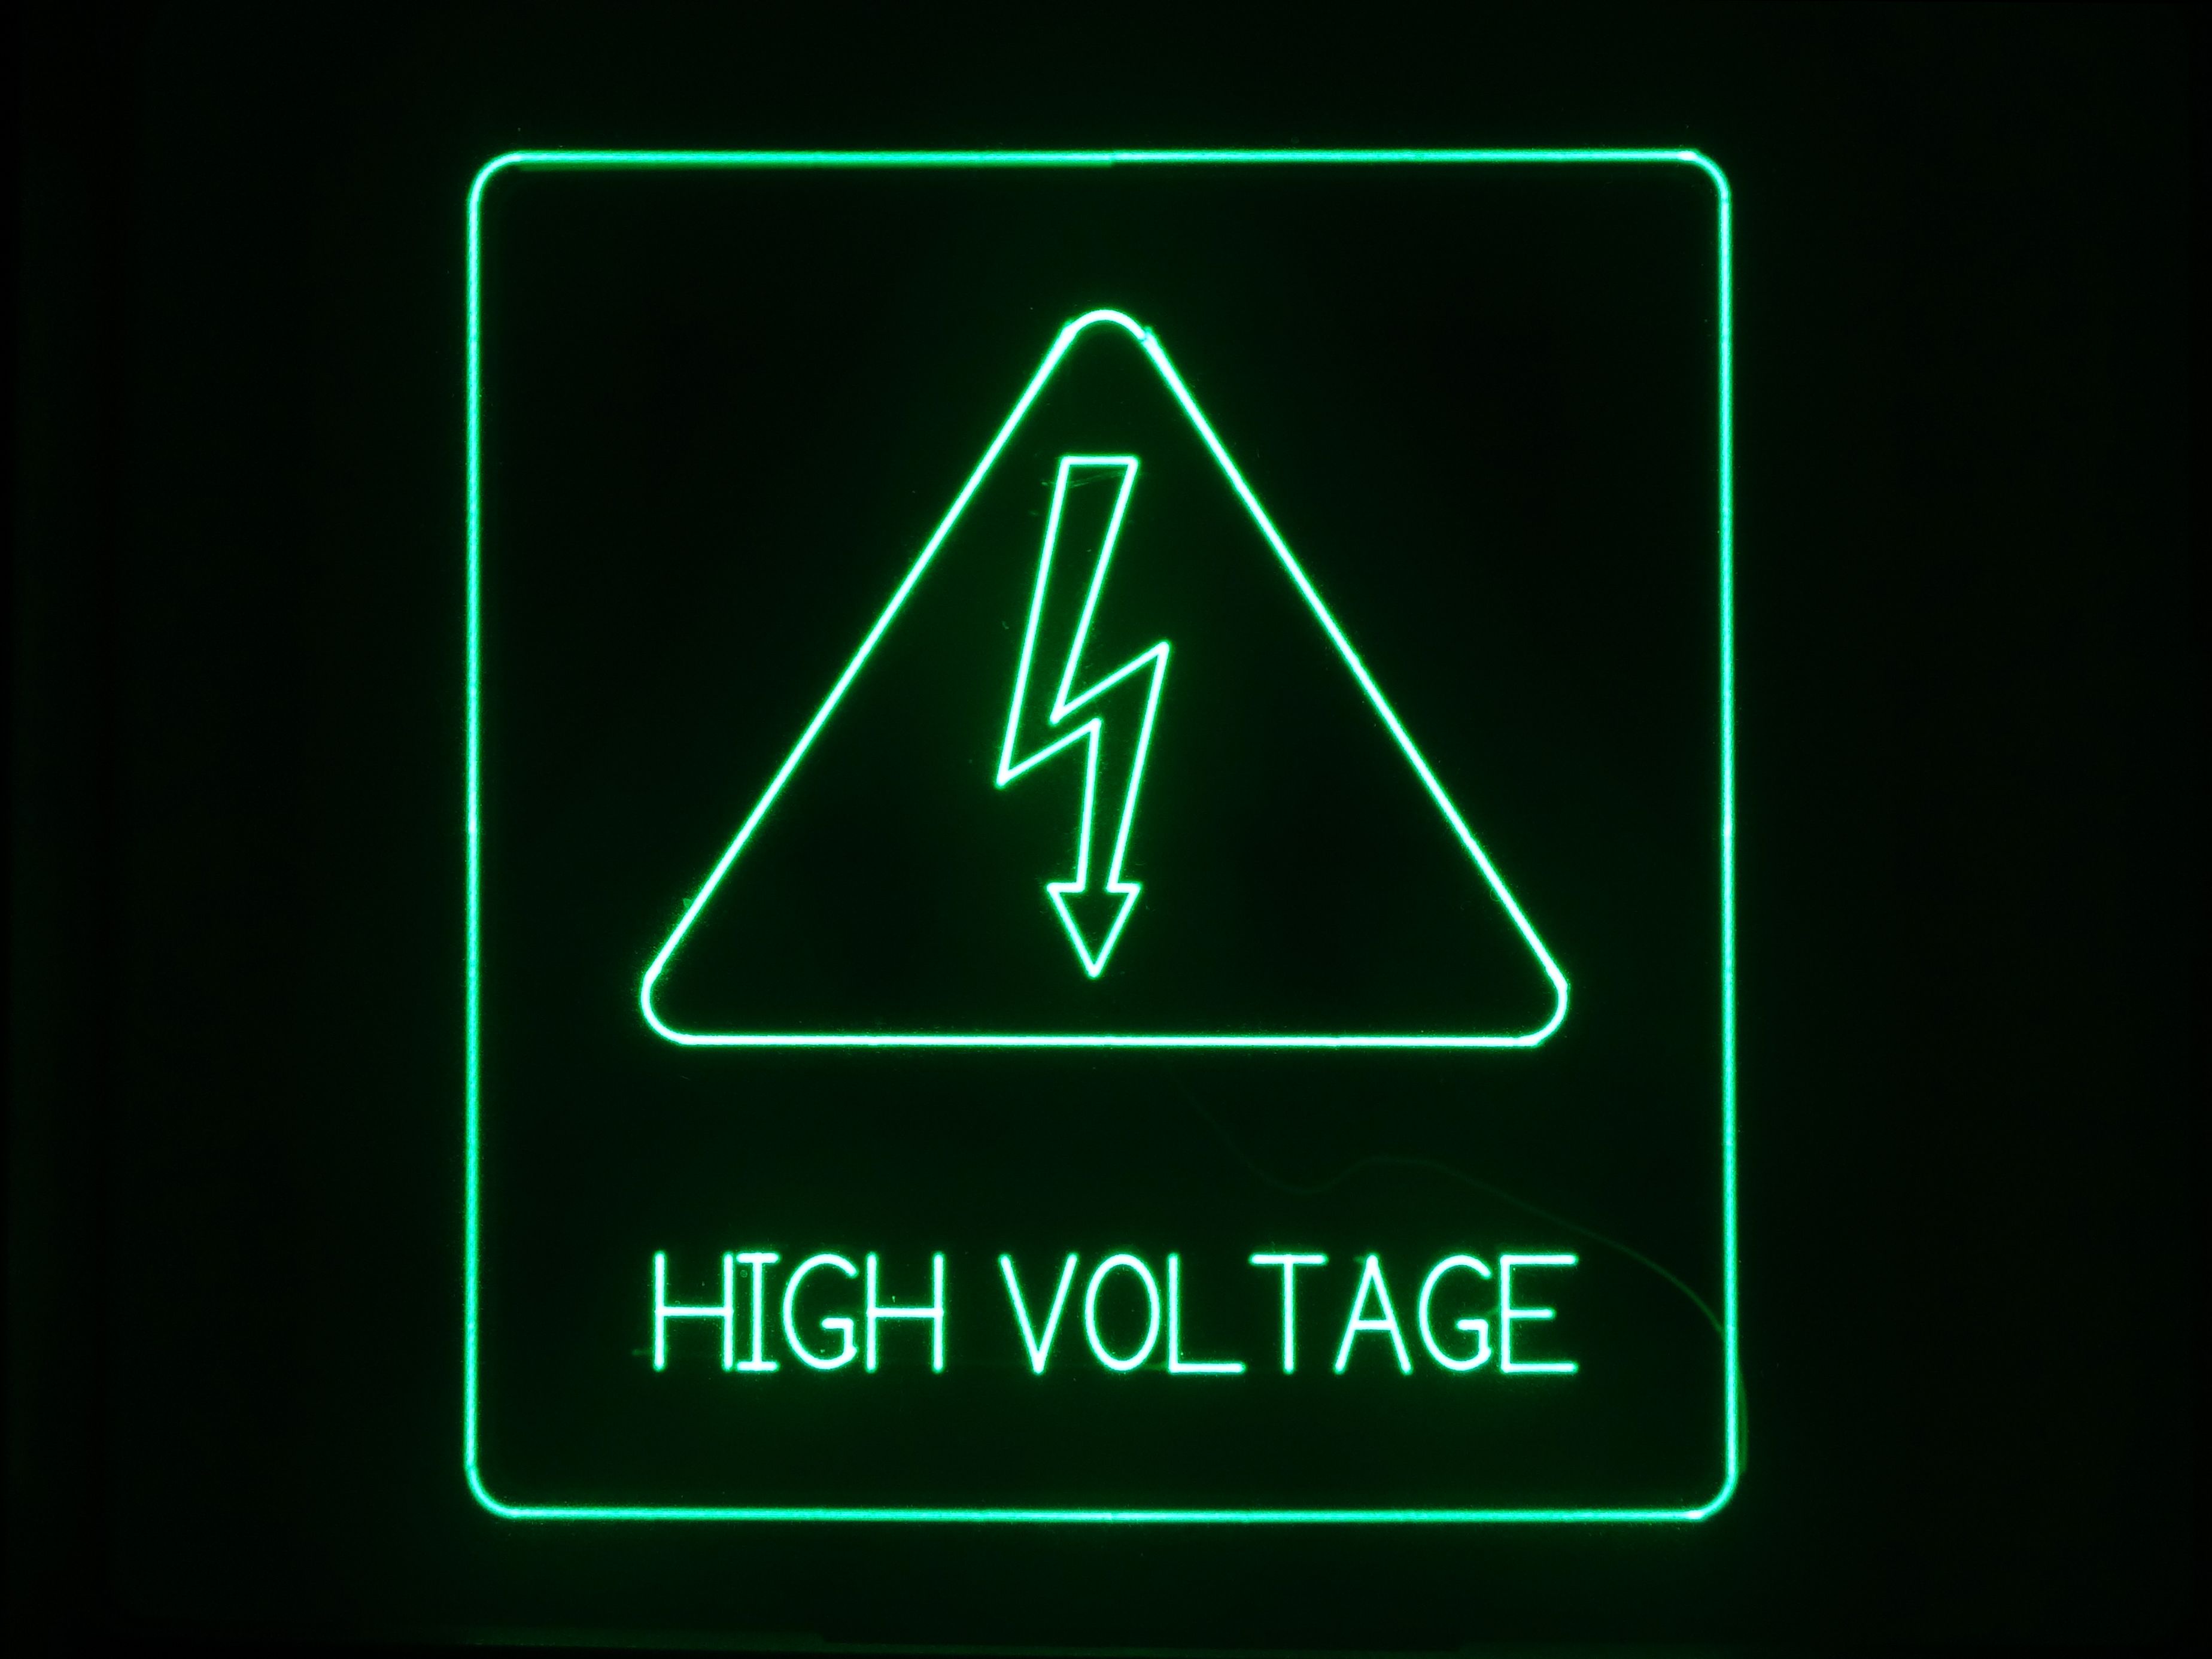 High Voltage Wallpaper. Voltage Campers Wallpaper, High Voltage Wallpaper and High Voltage Warning Sign Wallpaper